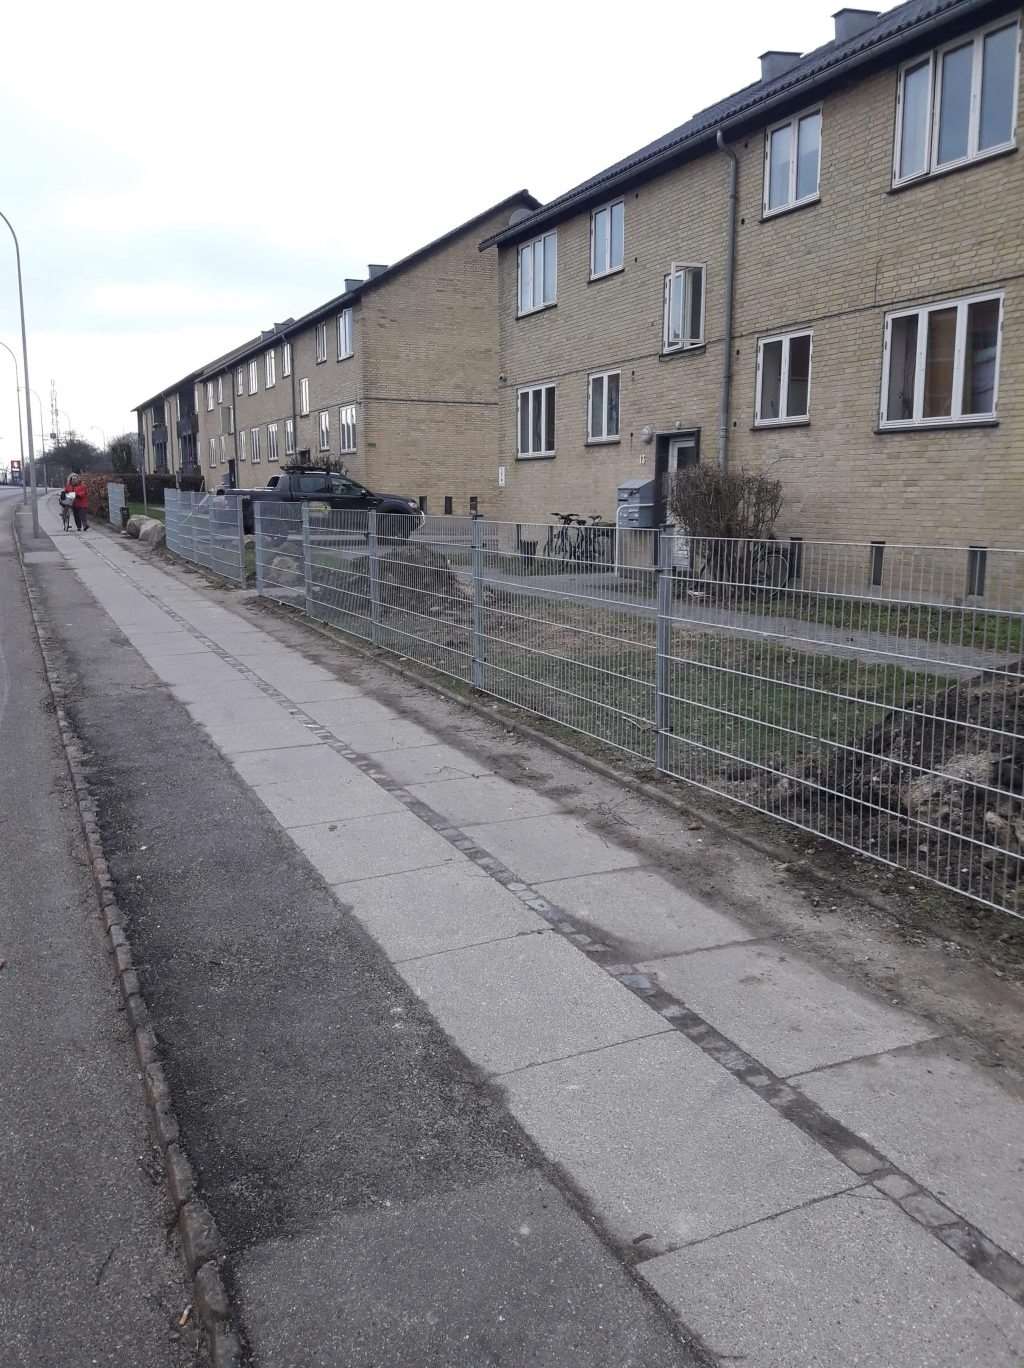 Montering af hegn i Roskilde, Sjælland